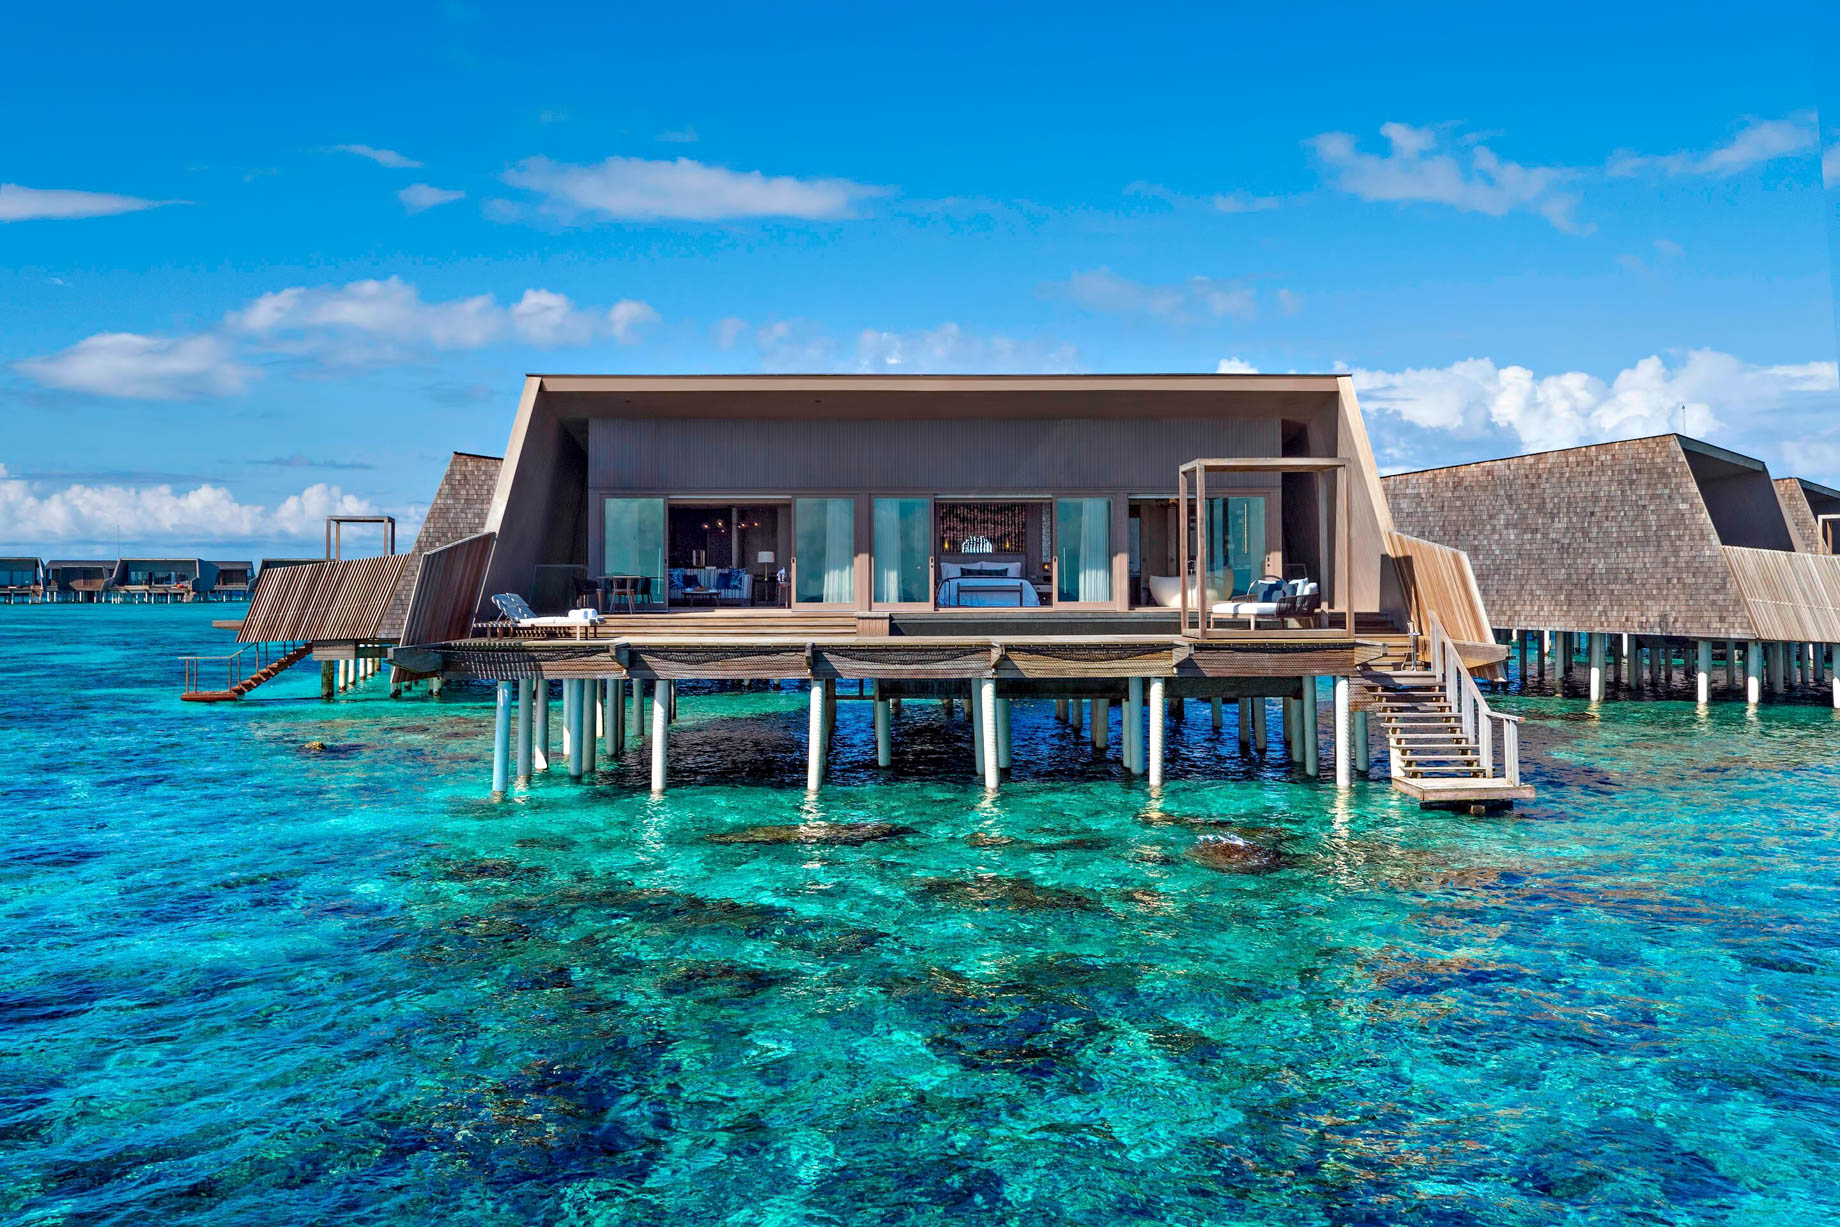 The St. Regis Maldives Vommuli Resort – Dhaalu Atoll, Maldives – St. Regis Overwater Suite